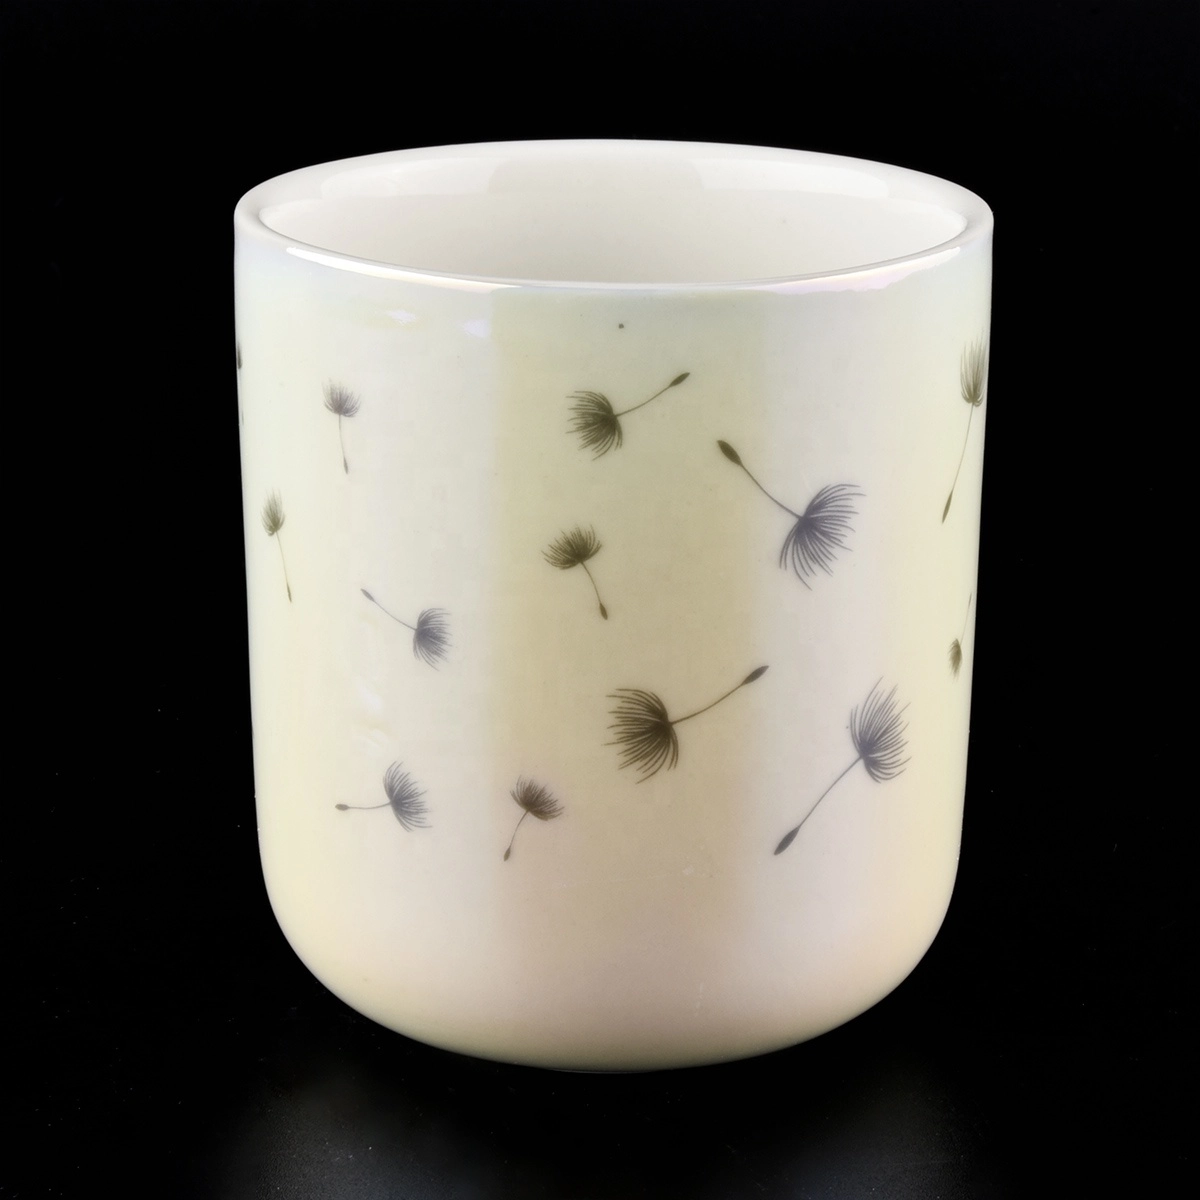 10oz Iridescent White Ceramic Candle jars